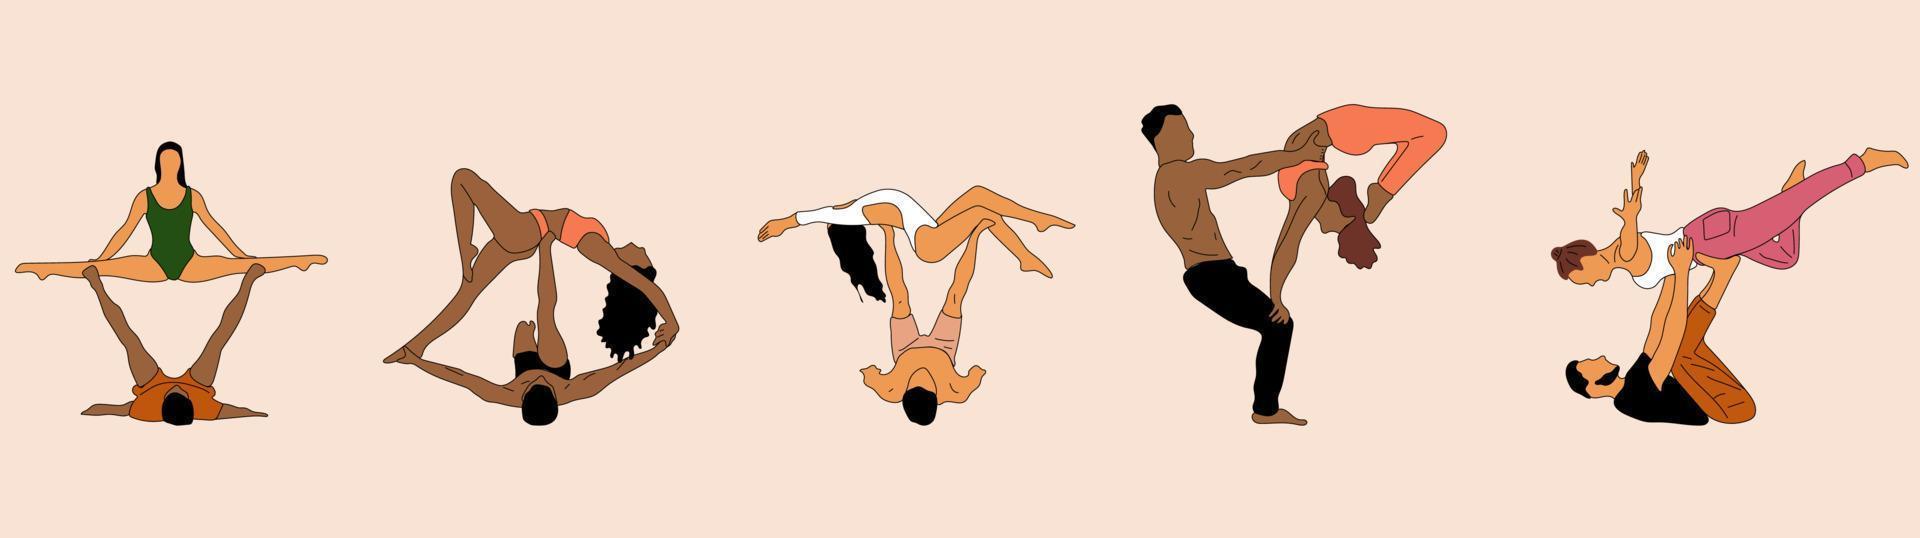 conjunto de pessoas casal fazendo ilustração de ioga. asanas de ioga para casal yoga.esboço desenhado à mão vetor